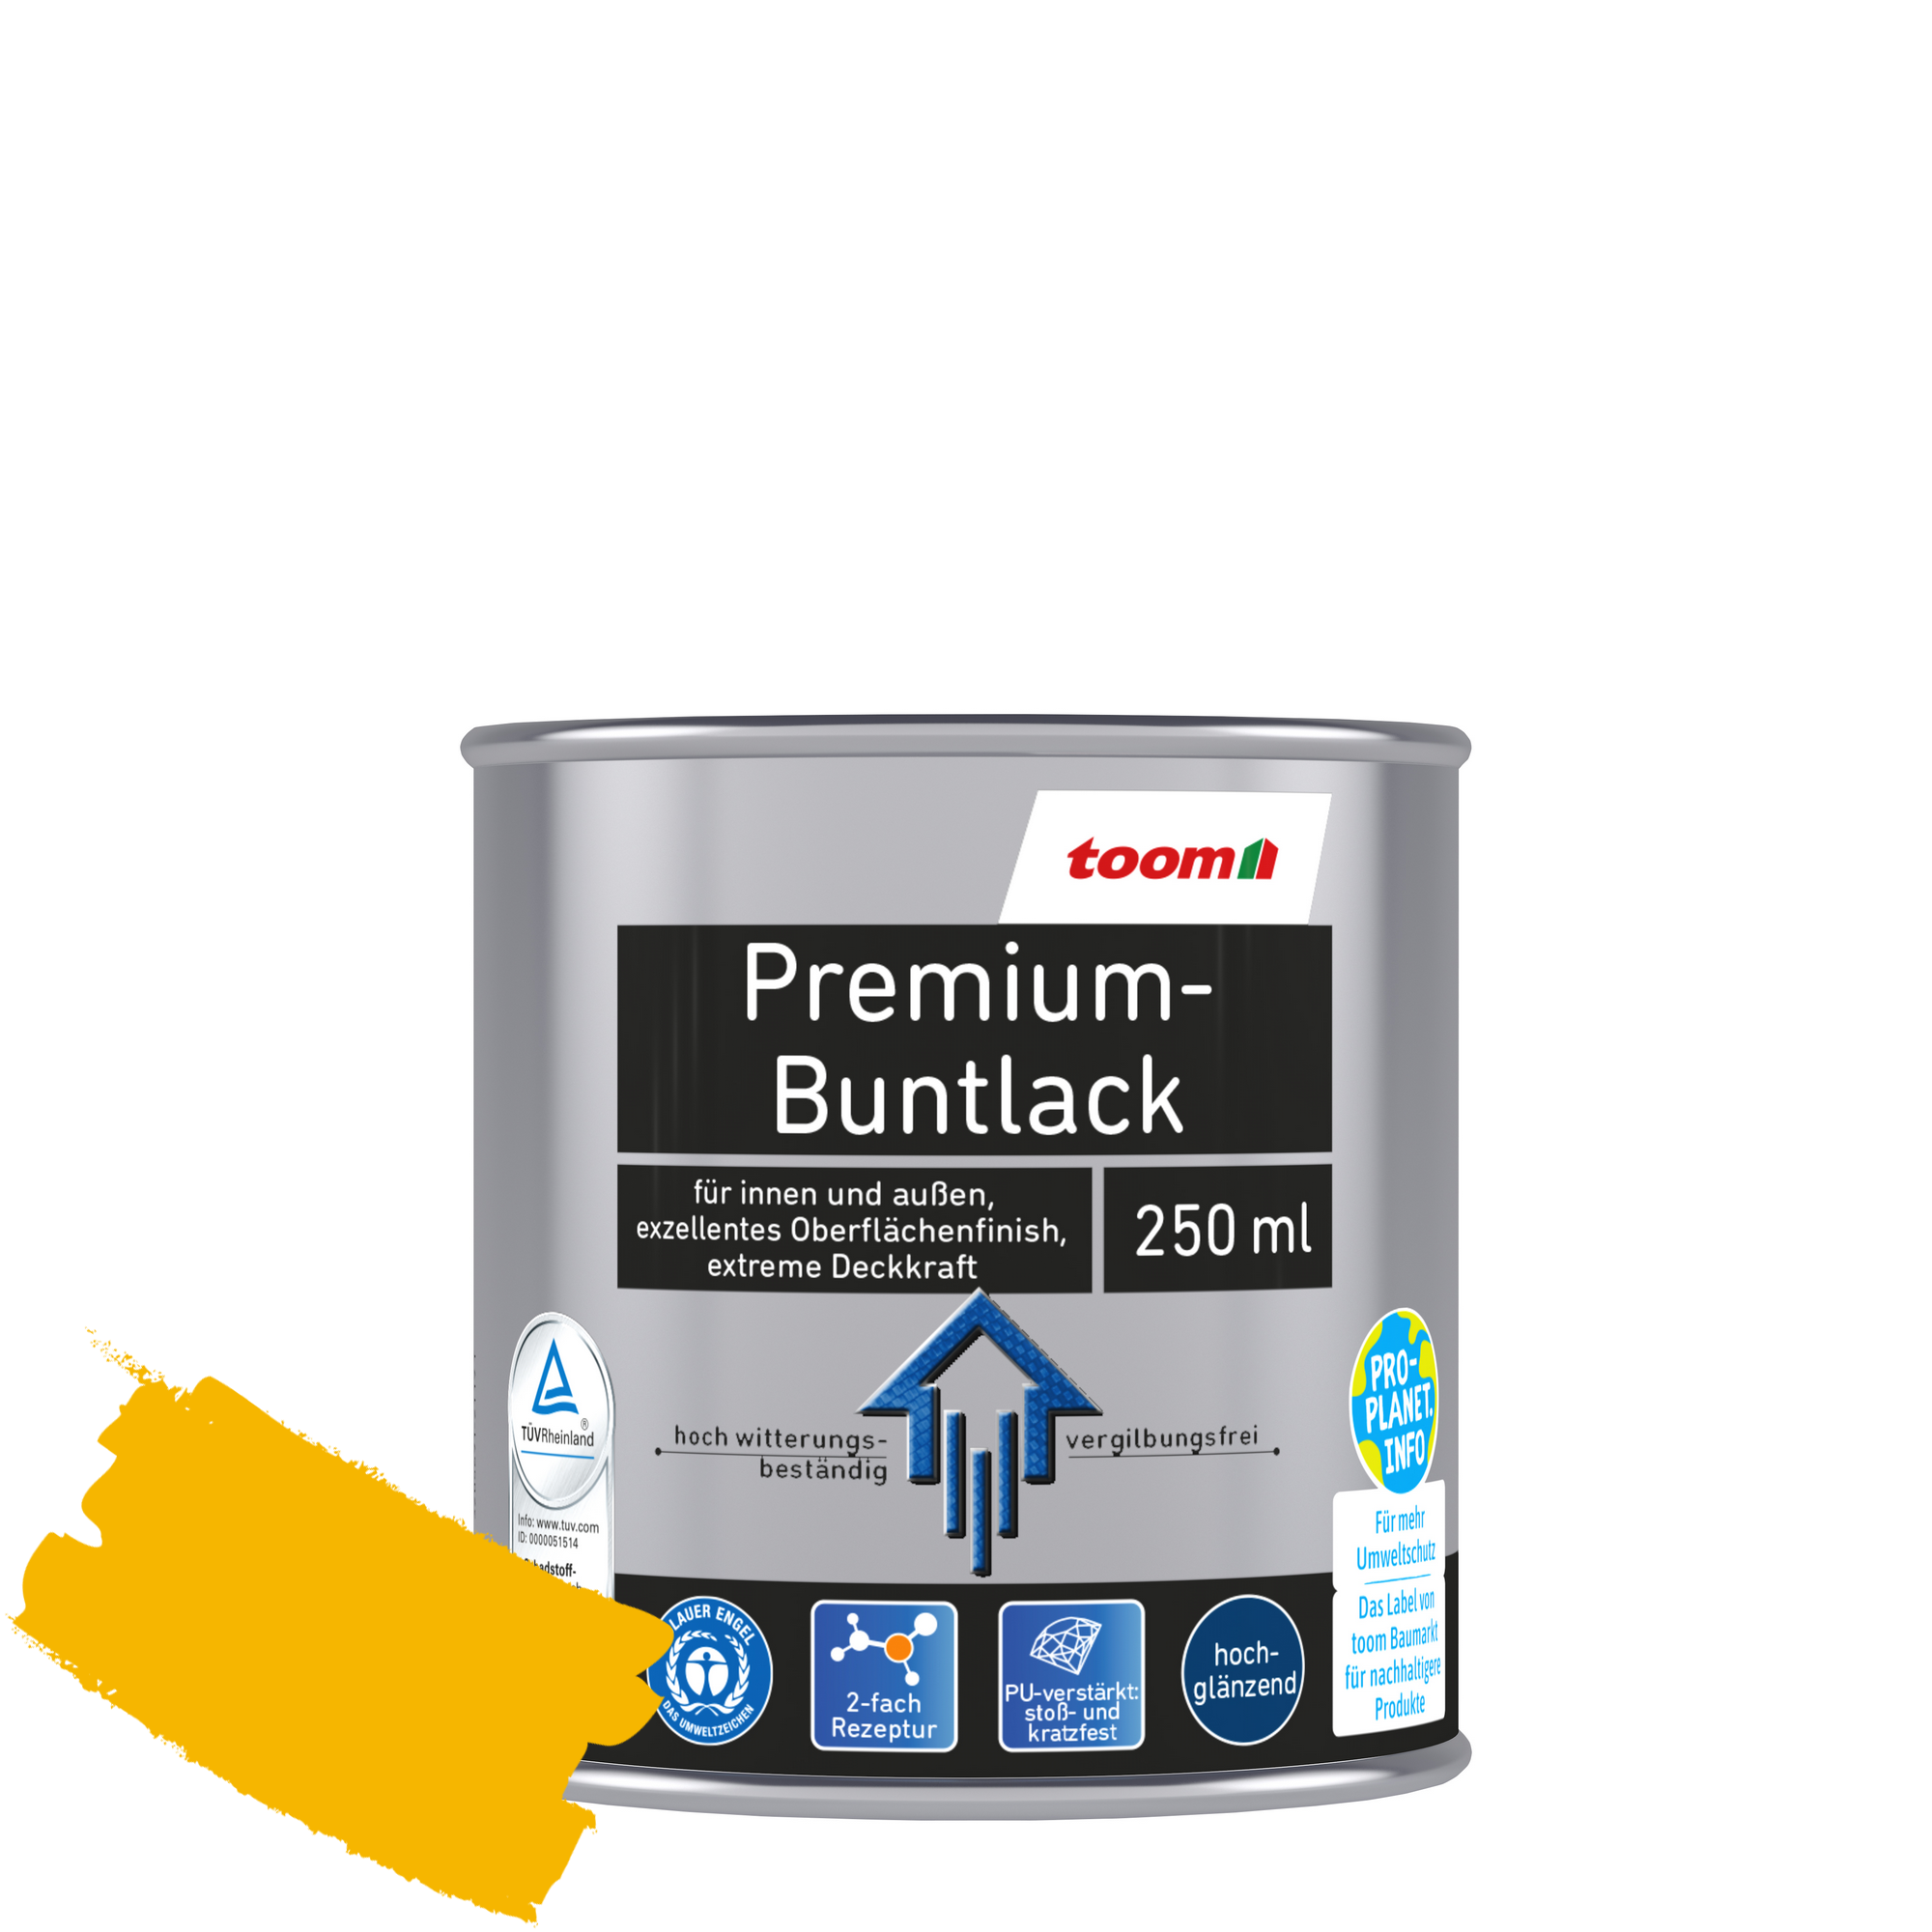 Premium-Buntlack rapsgelb glänzend 250 ml + product picture